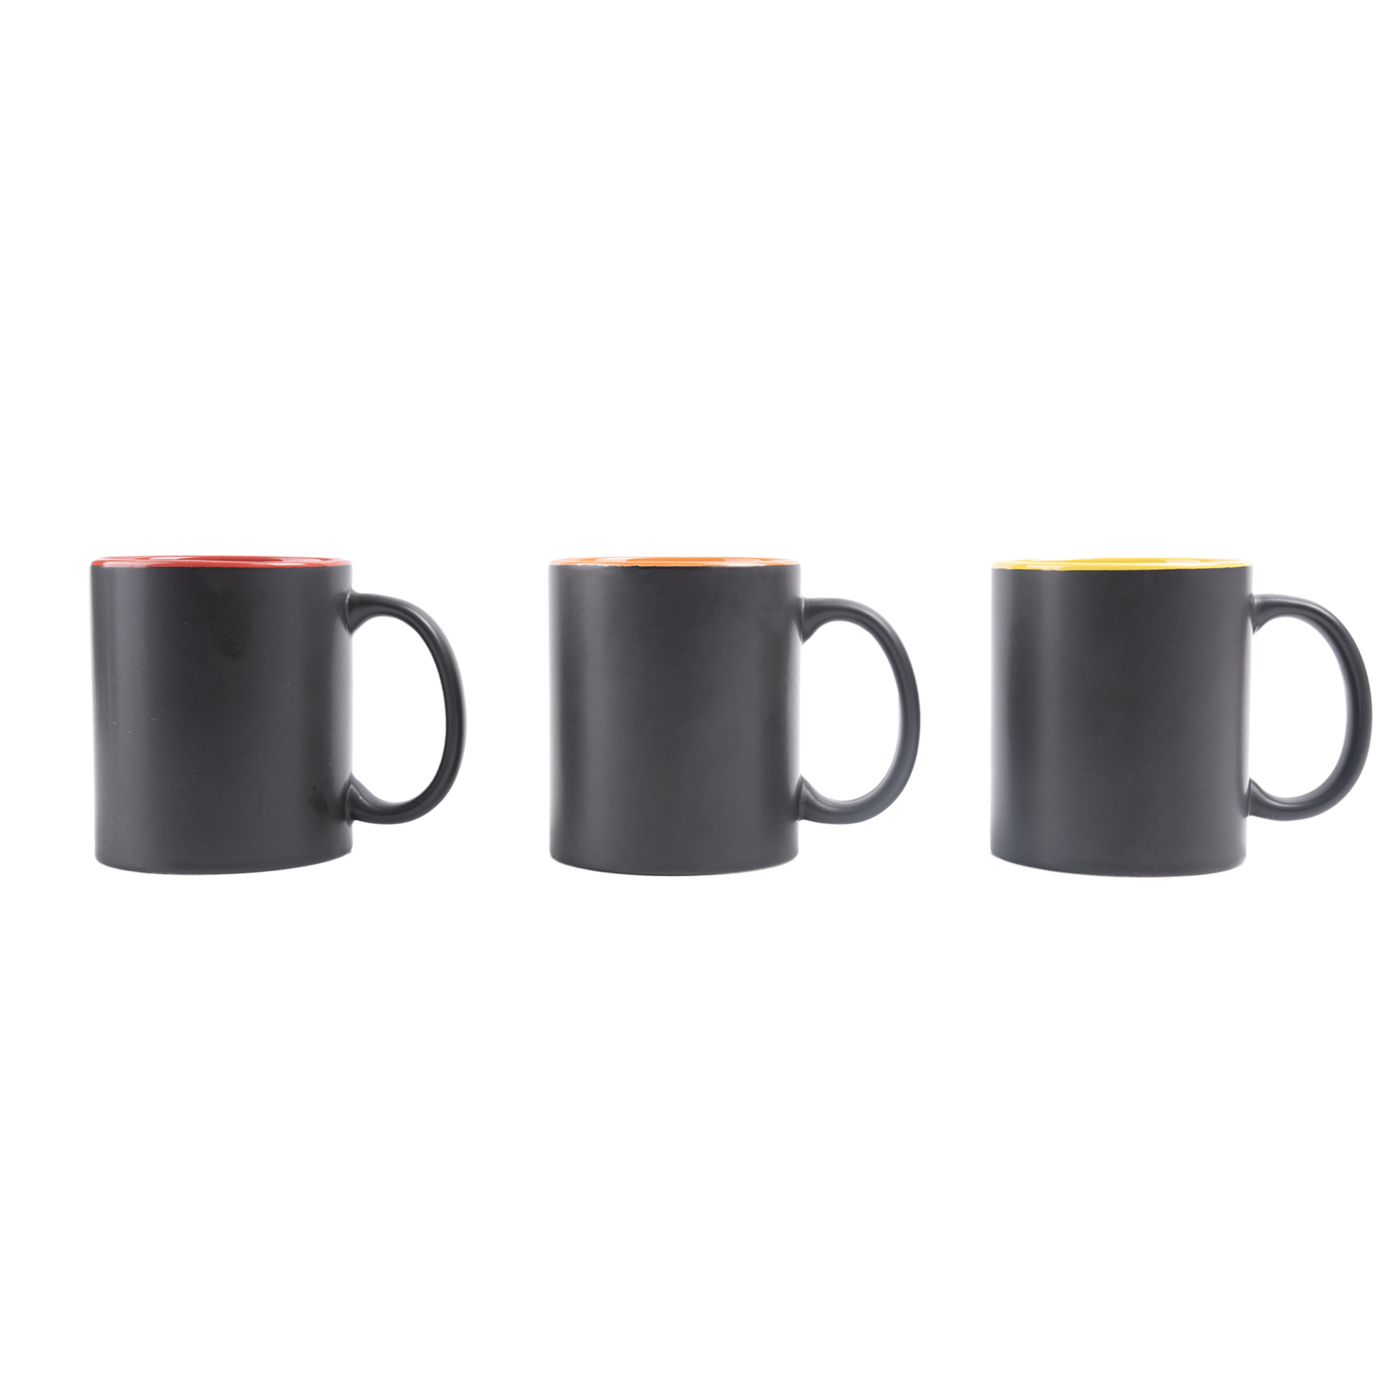 Custom 11 oz. Two Tone Ceramic Coffee Mug